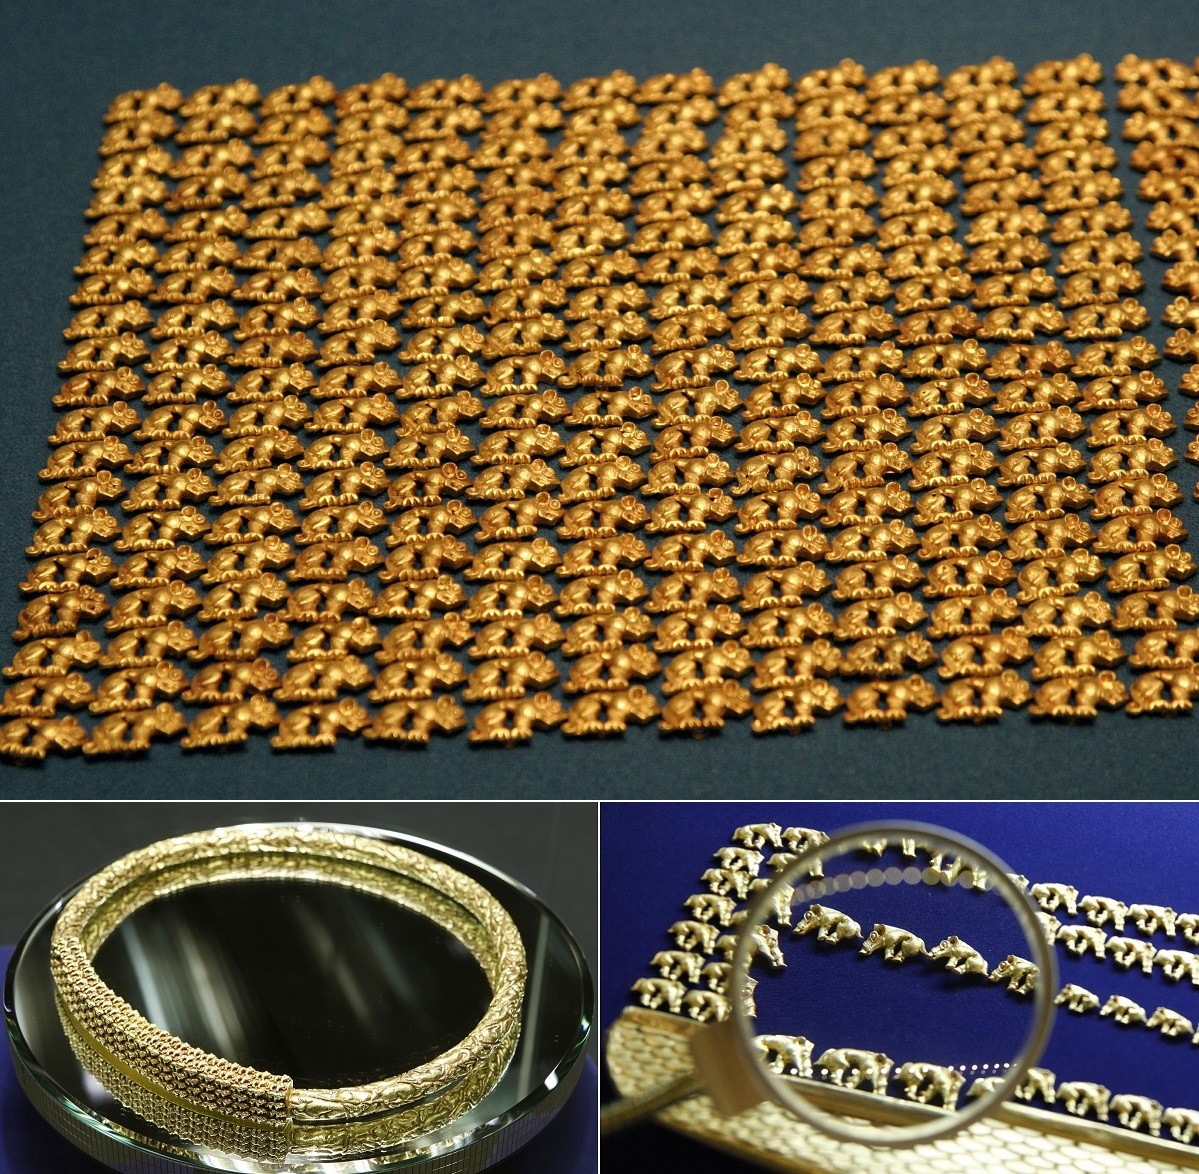 Y sont également jalousement gardés d'inestimables trésors : des artefacts scythes découverts dans la « Vallée des tsars », site archéologique majeur du Touva. Ces bijoux en or datant d'il y a près de 3 000 ans sont d’un raffinement tel, que leurs techniques de création restent encore incomprises.